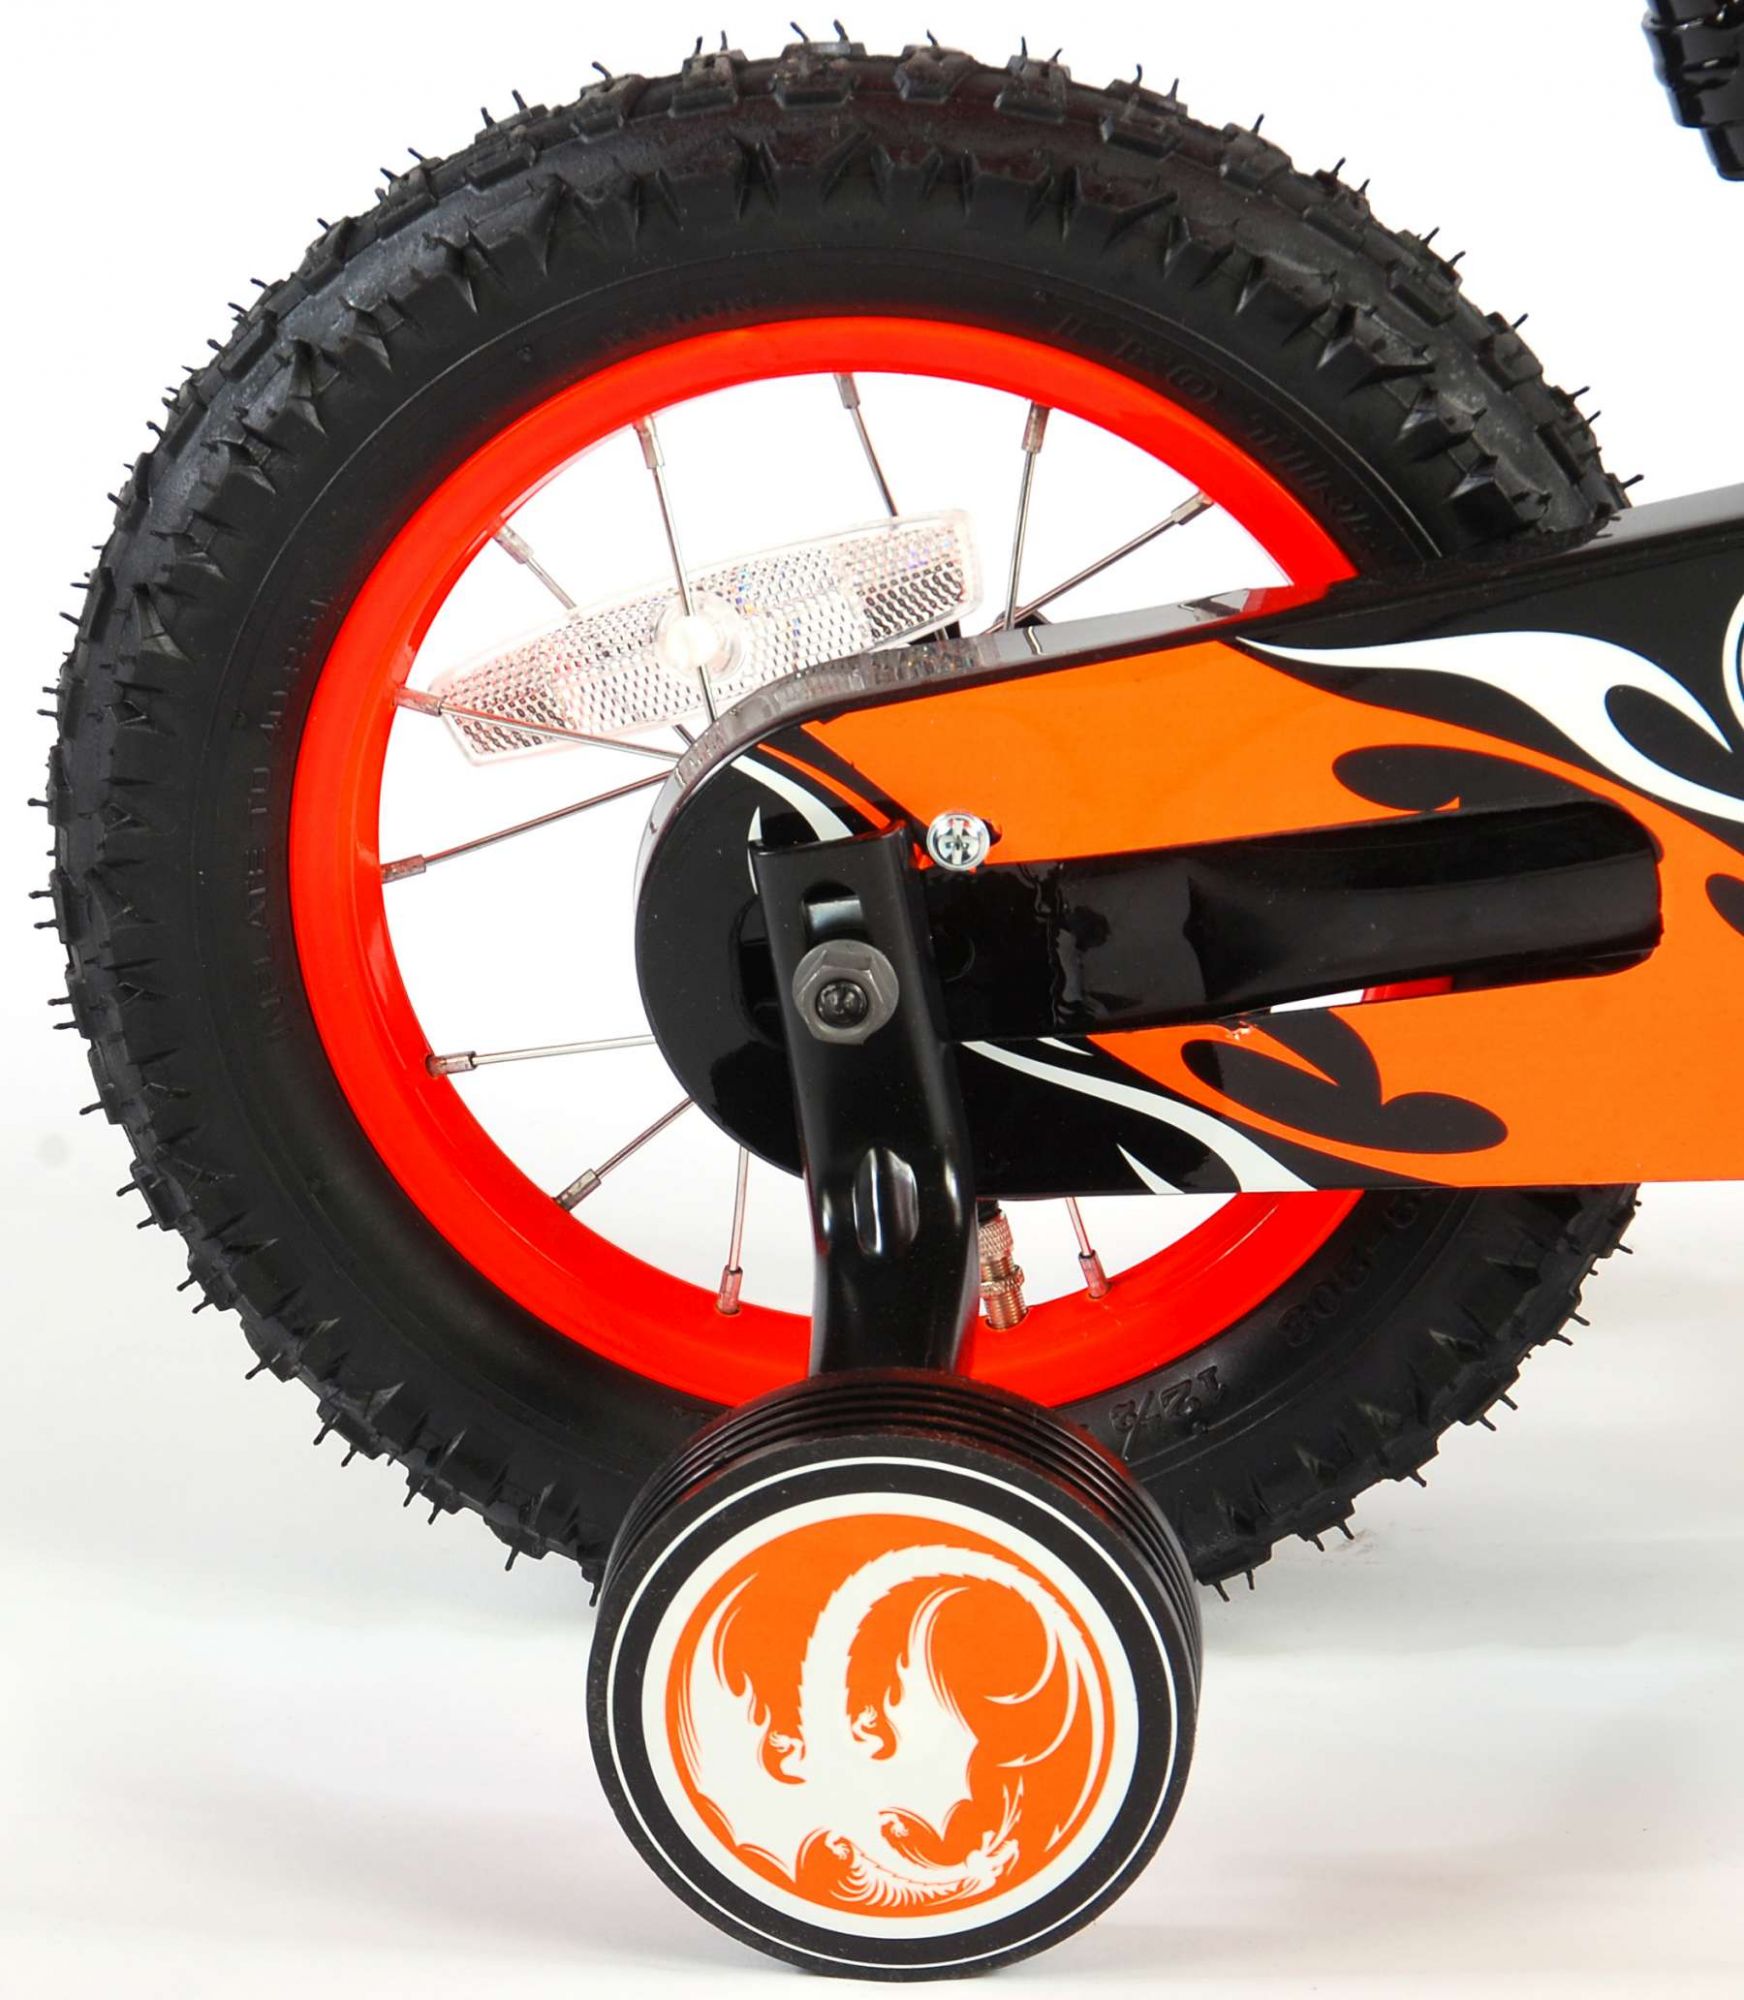 Vélo moto enfant Volare - garçon - 12 po - orange - assemblé à 95 %